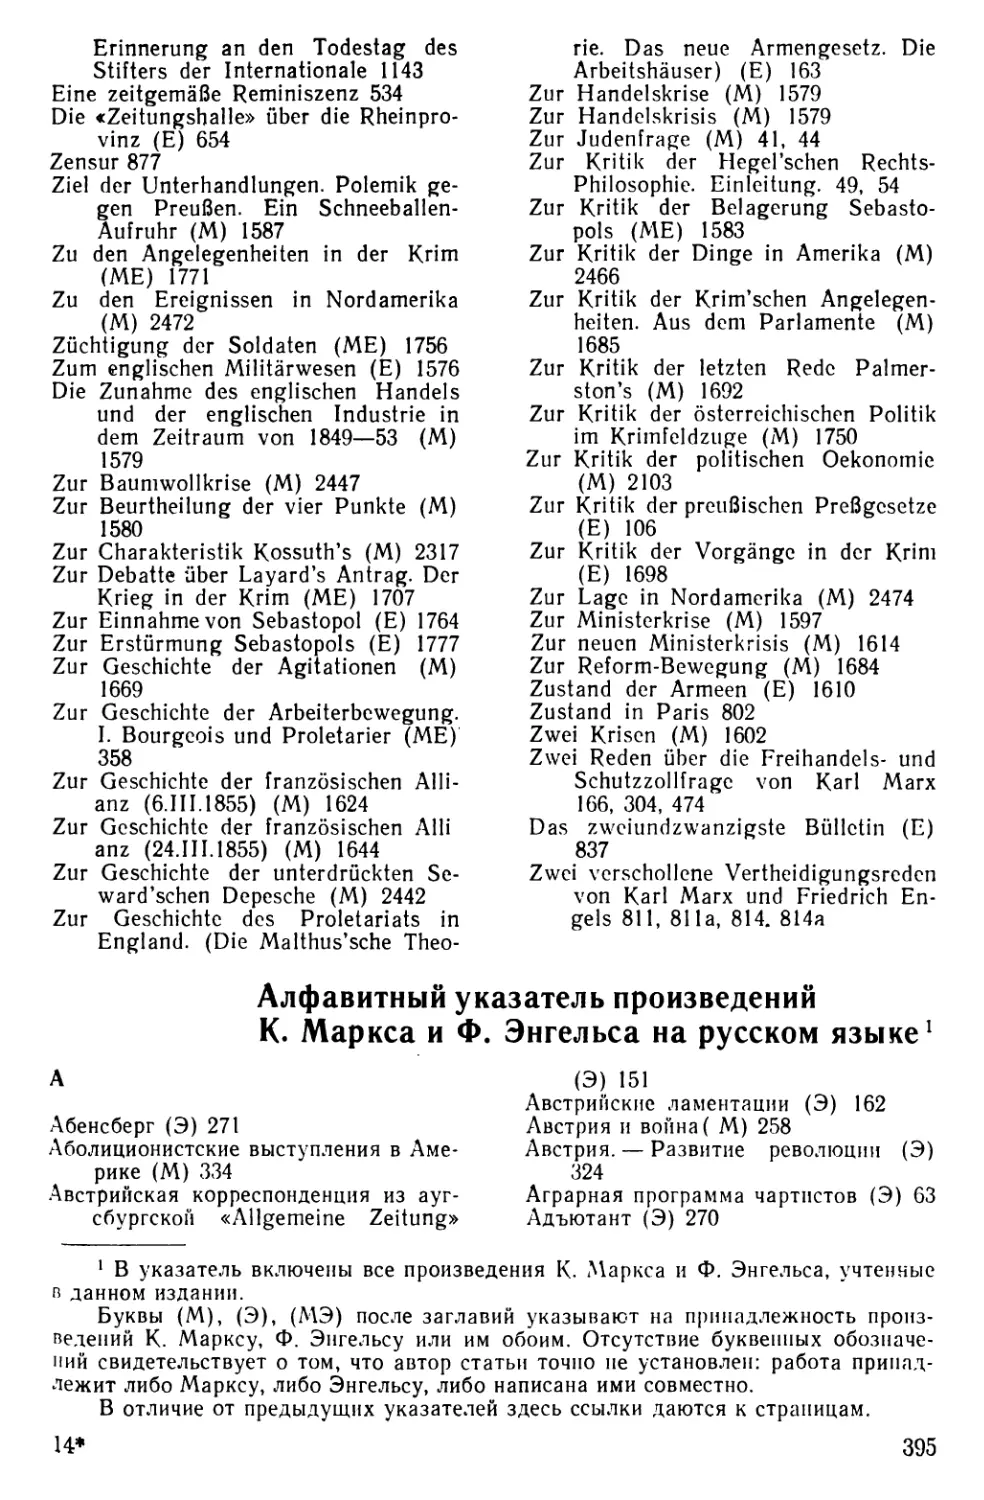 Алфавитный указатель произведений К. Маркса и Ф. Энгельса на русском языке